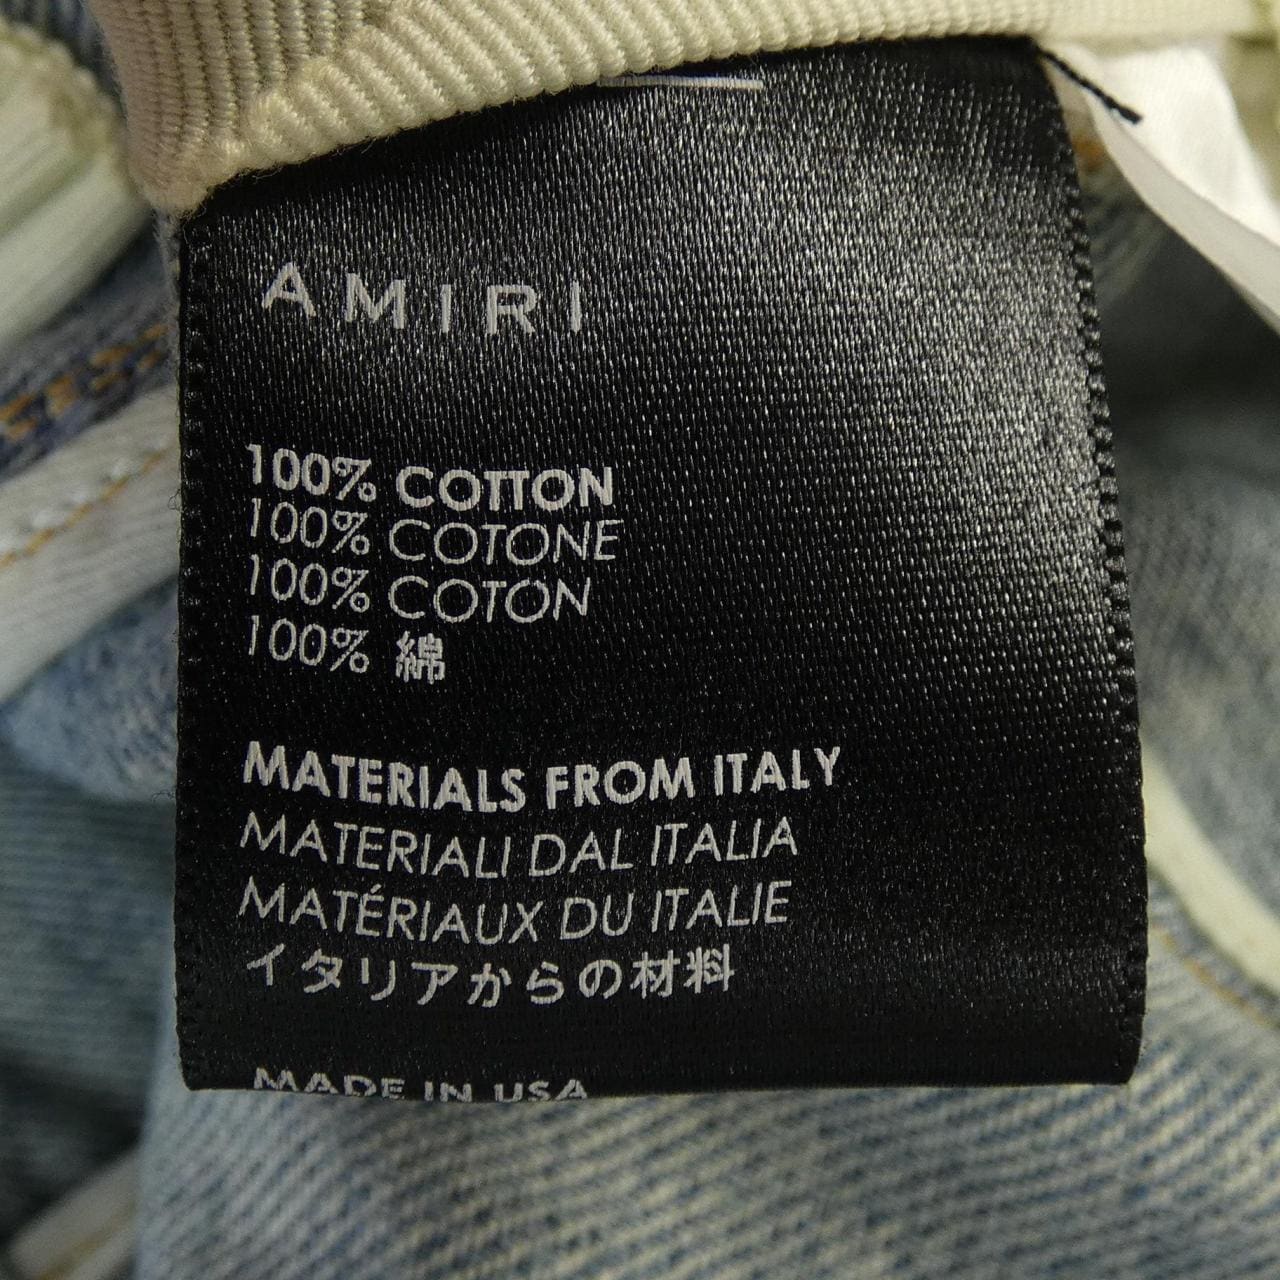 AMIRI Shorts